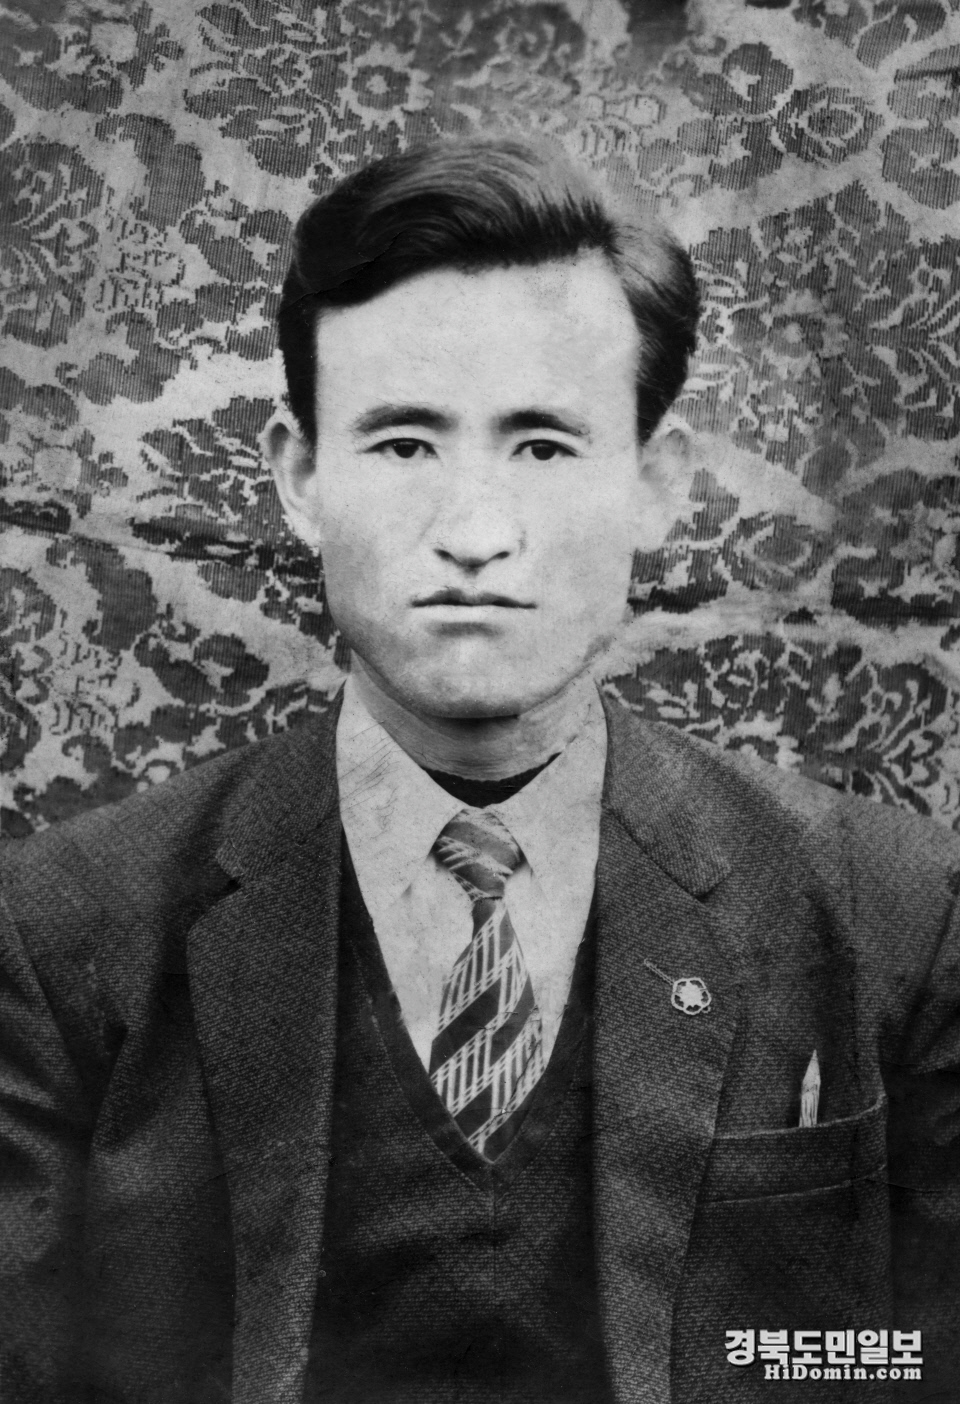 19세의 나이로 강제 징집된 고 김상진씨의 40대 모습 (1956년 촬영)